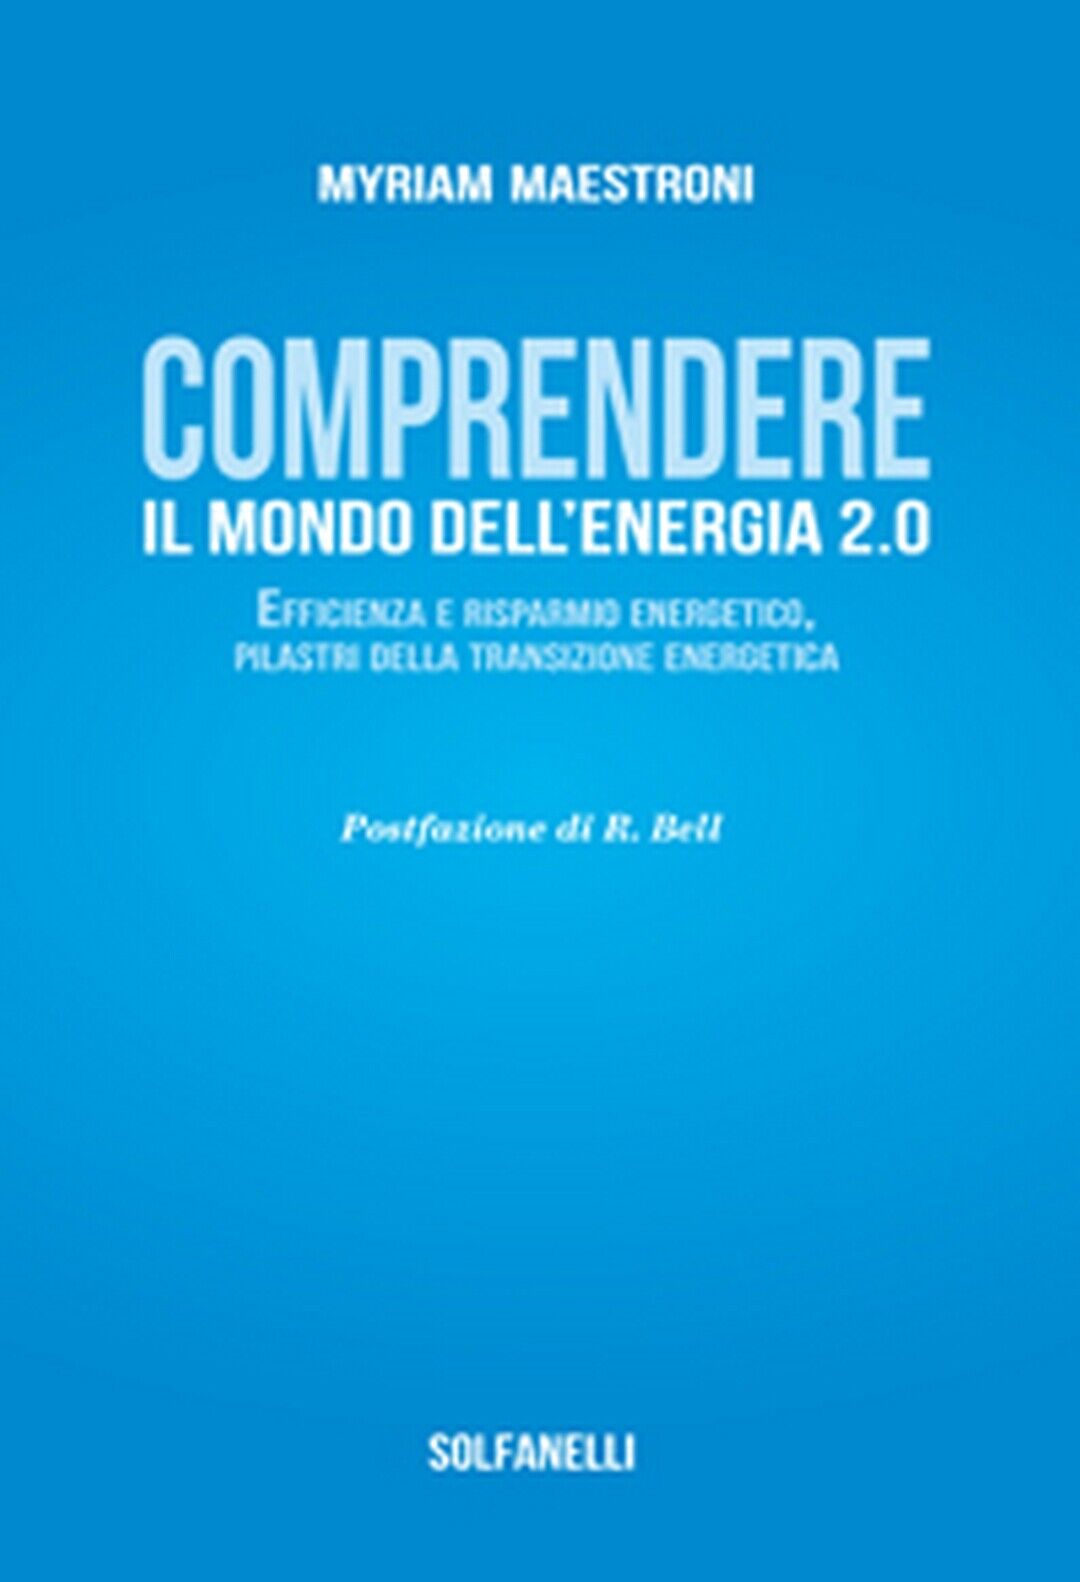 COMPRENDETE IL MONDO DELL'ENERGIA 2.0  di Myriam Maestroni,  Solfanelli Edizioni